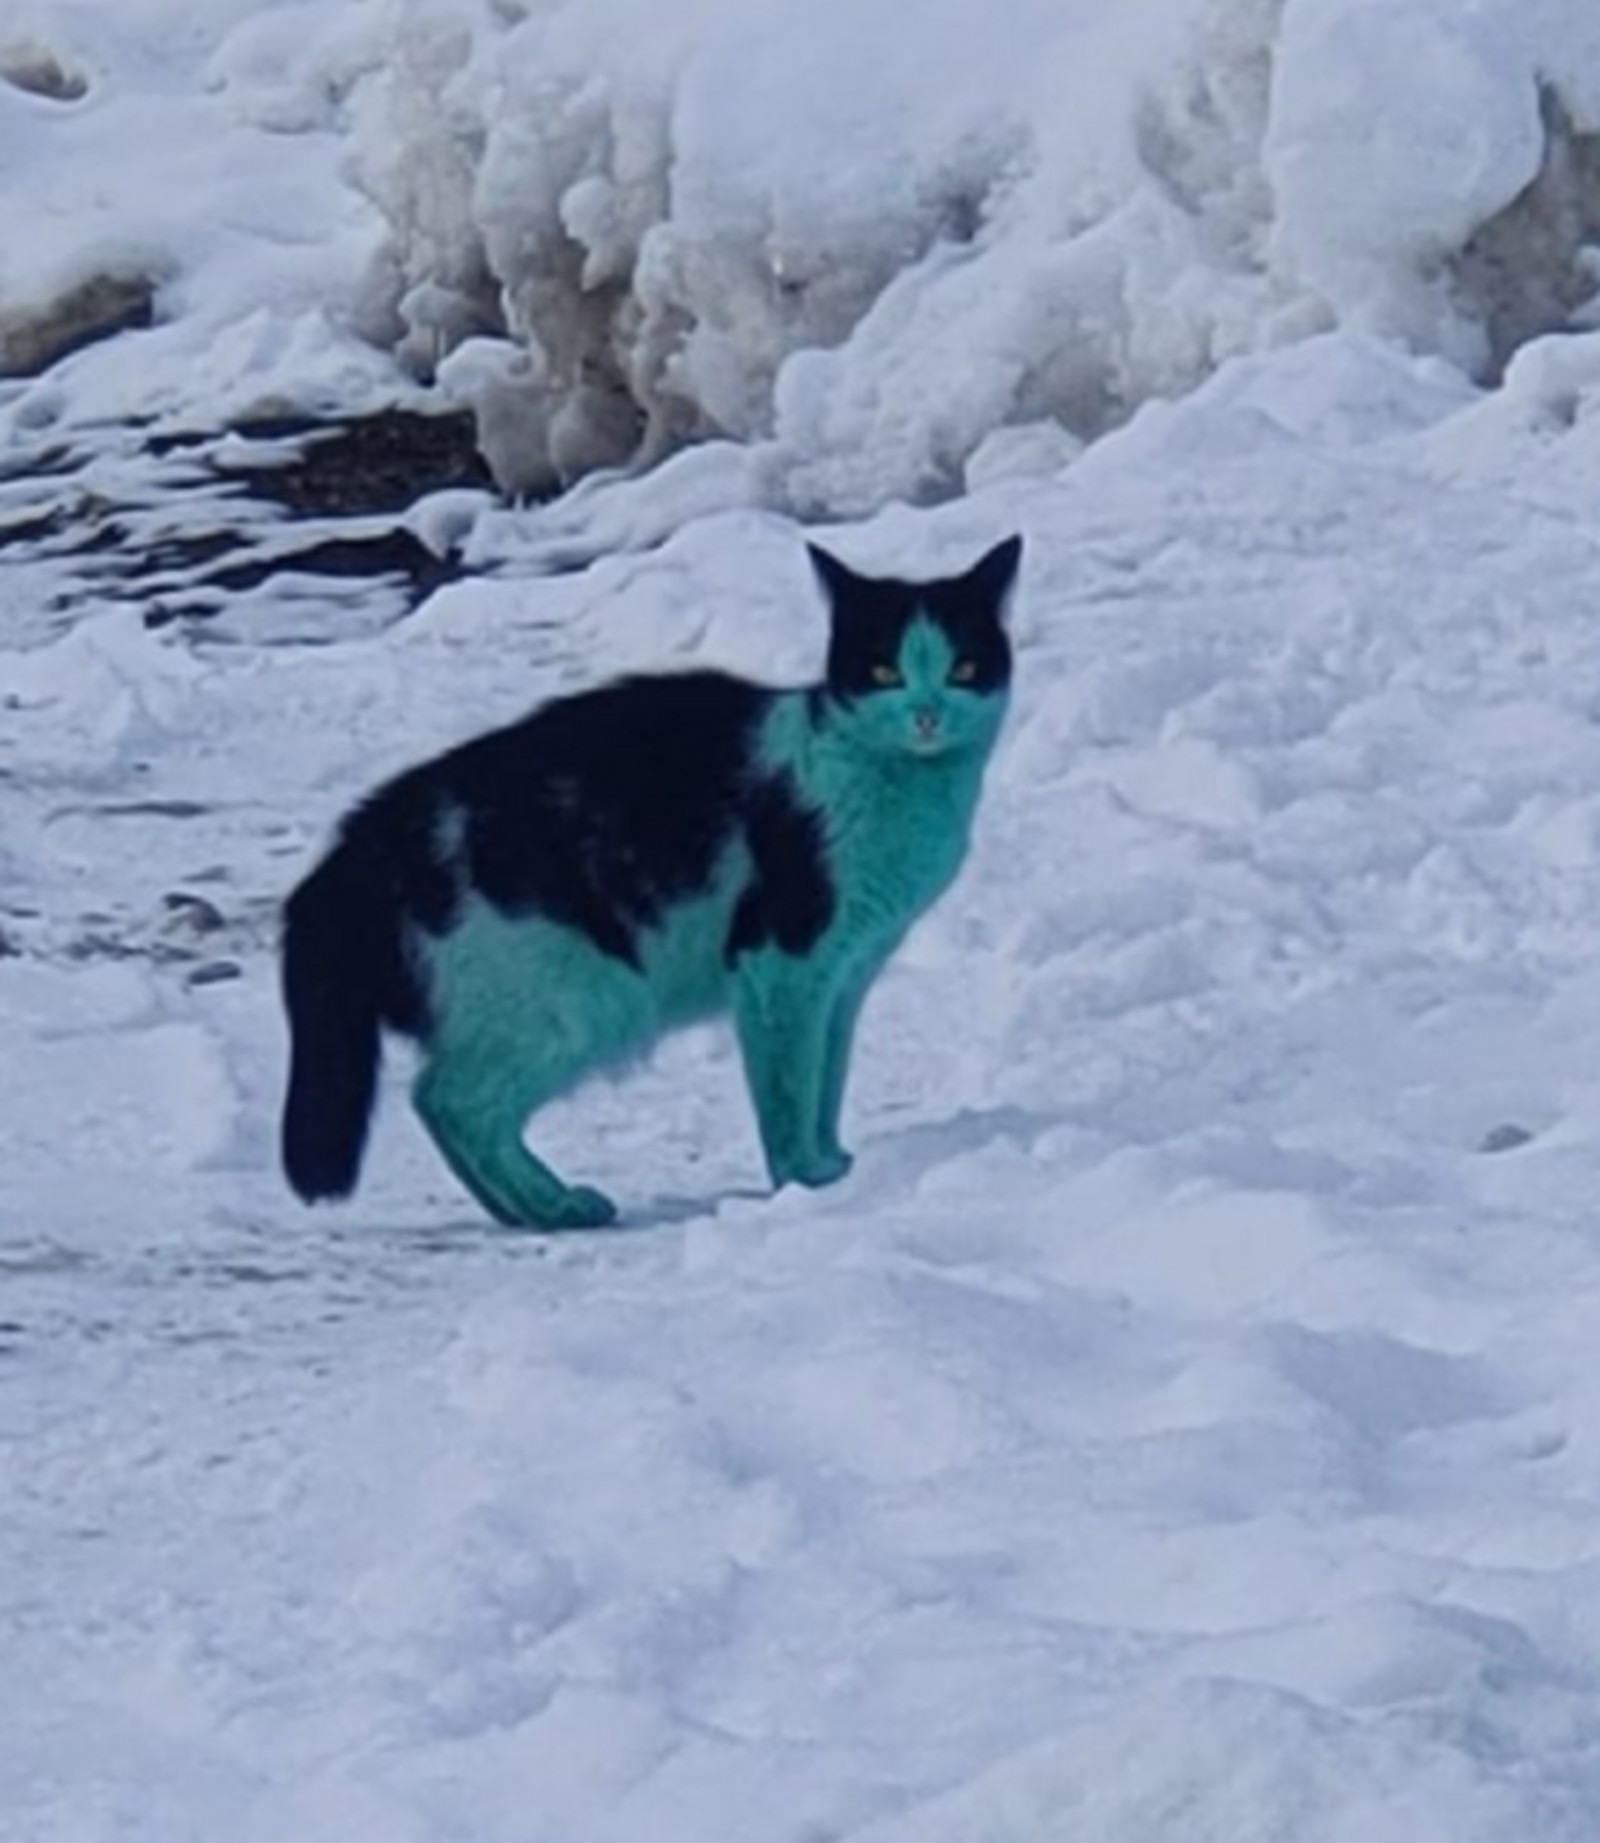 "Что это за существо - кот Шрек?":  в Башкирии обнаружили зелёную кошку